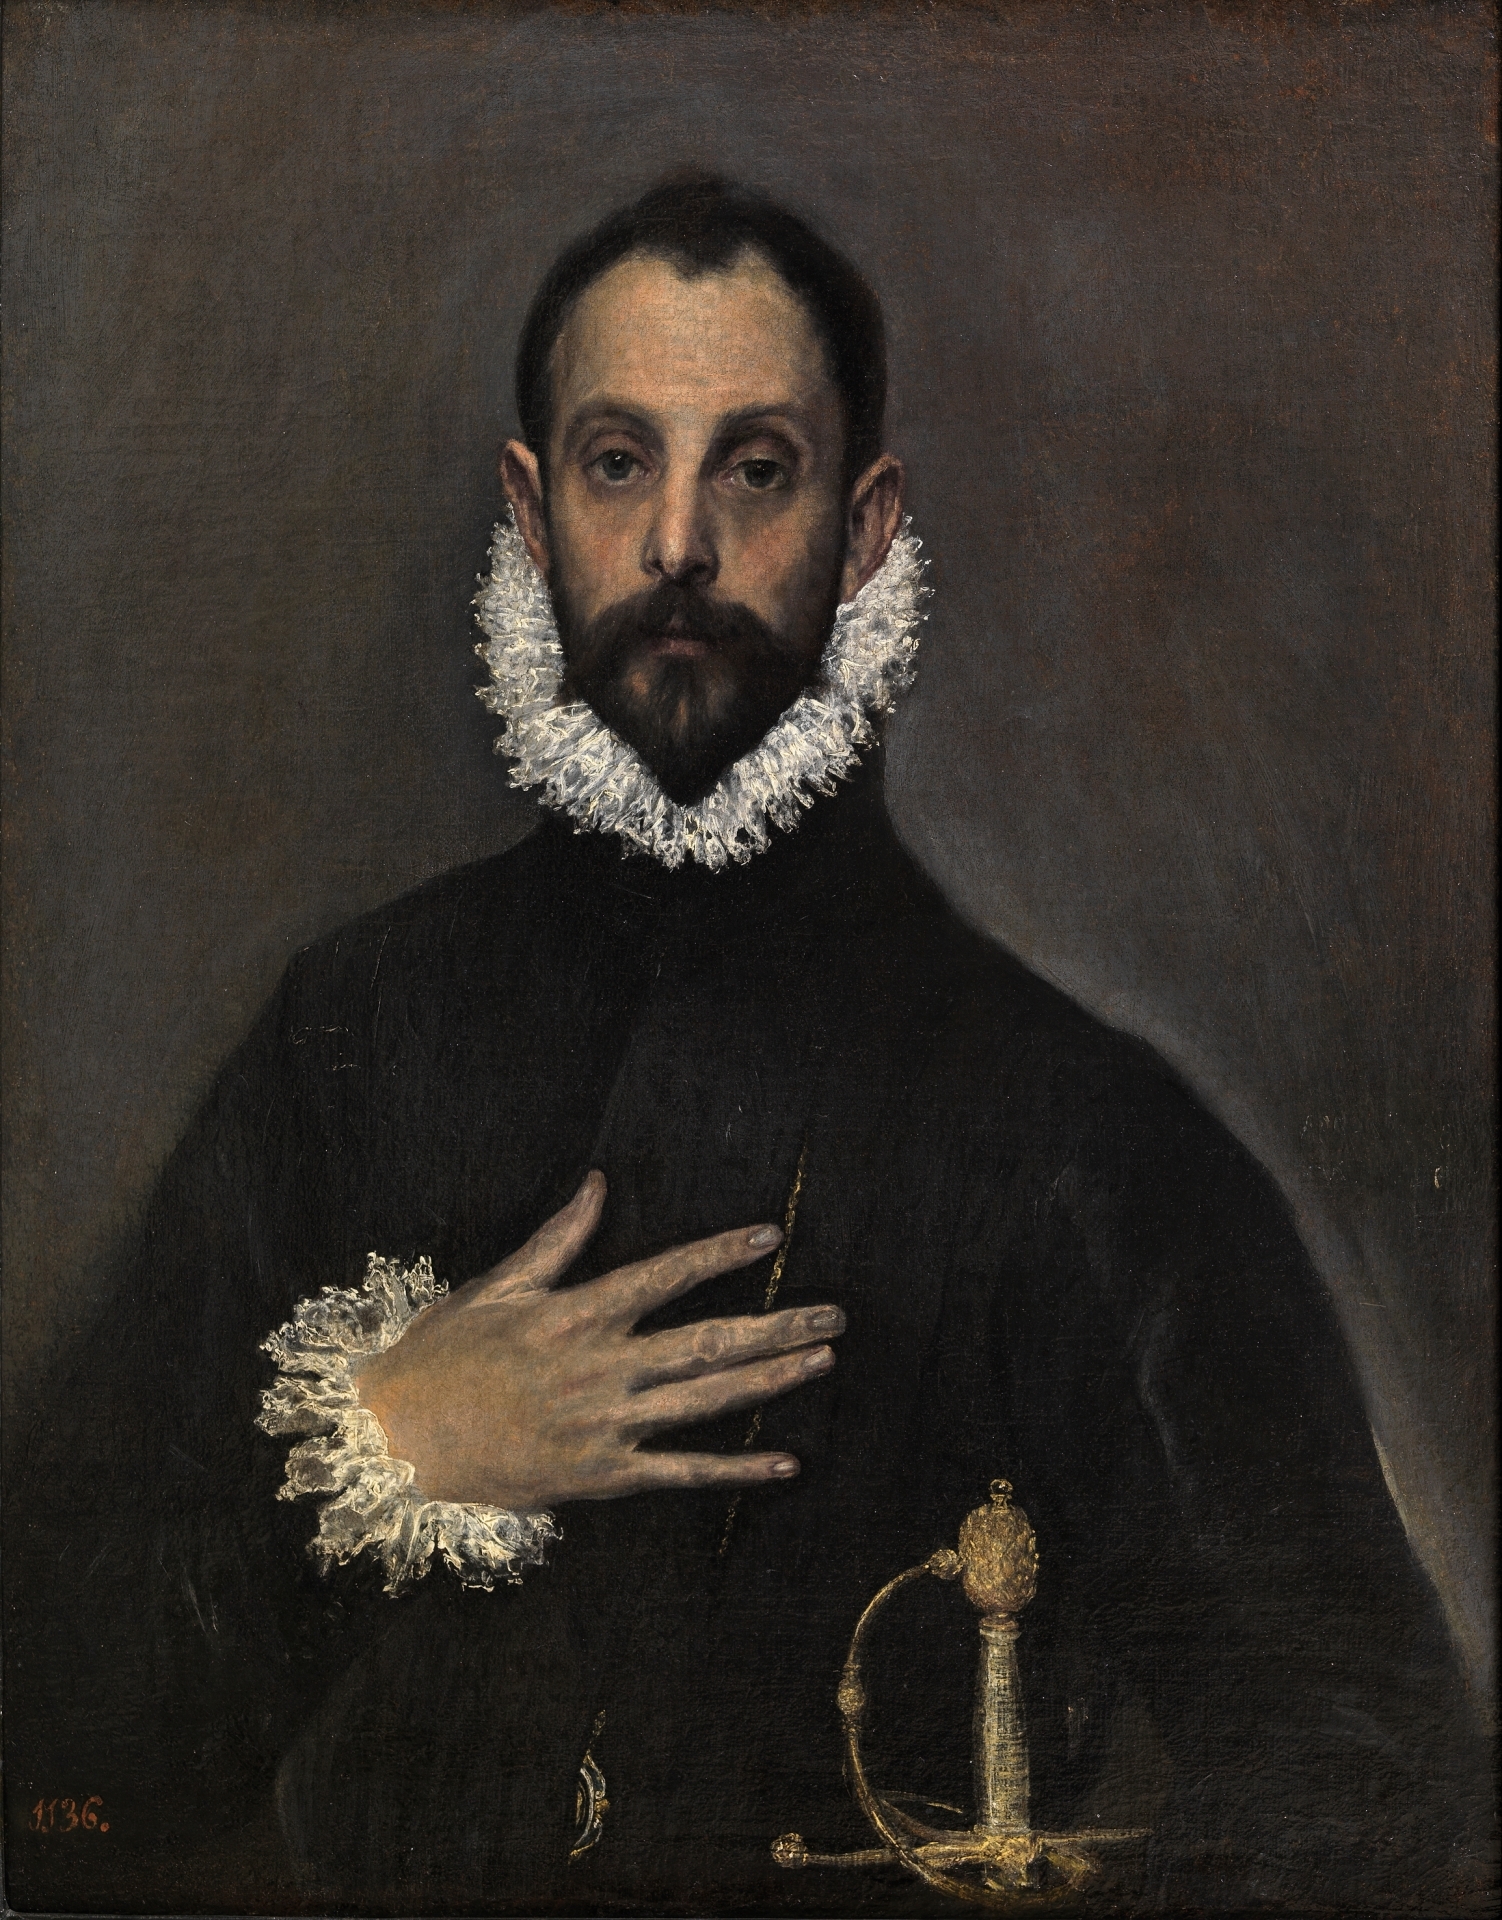 El Greco (Domenikos Theotokopoulos), Portrait of an Old Man